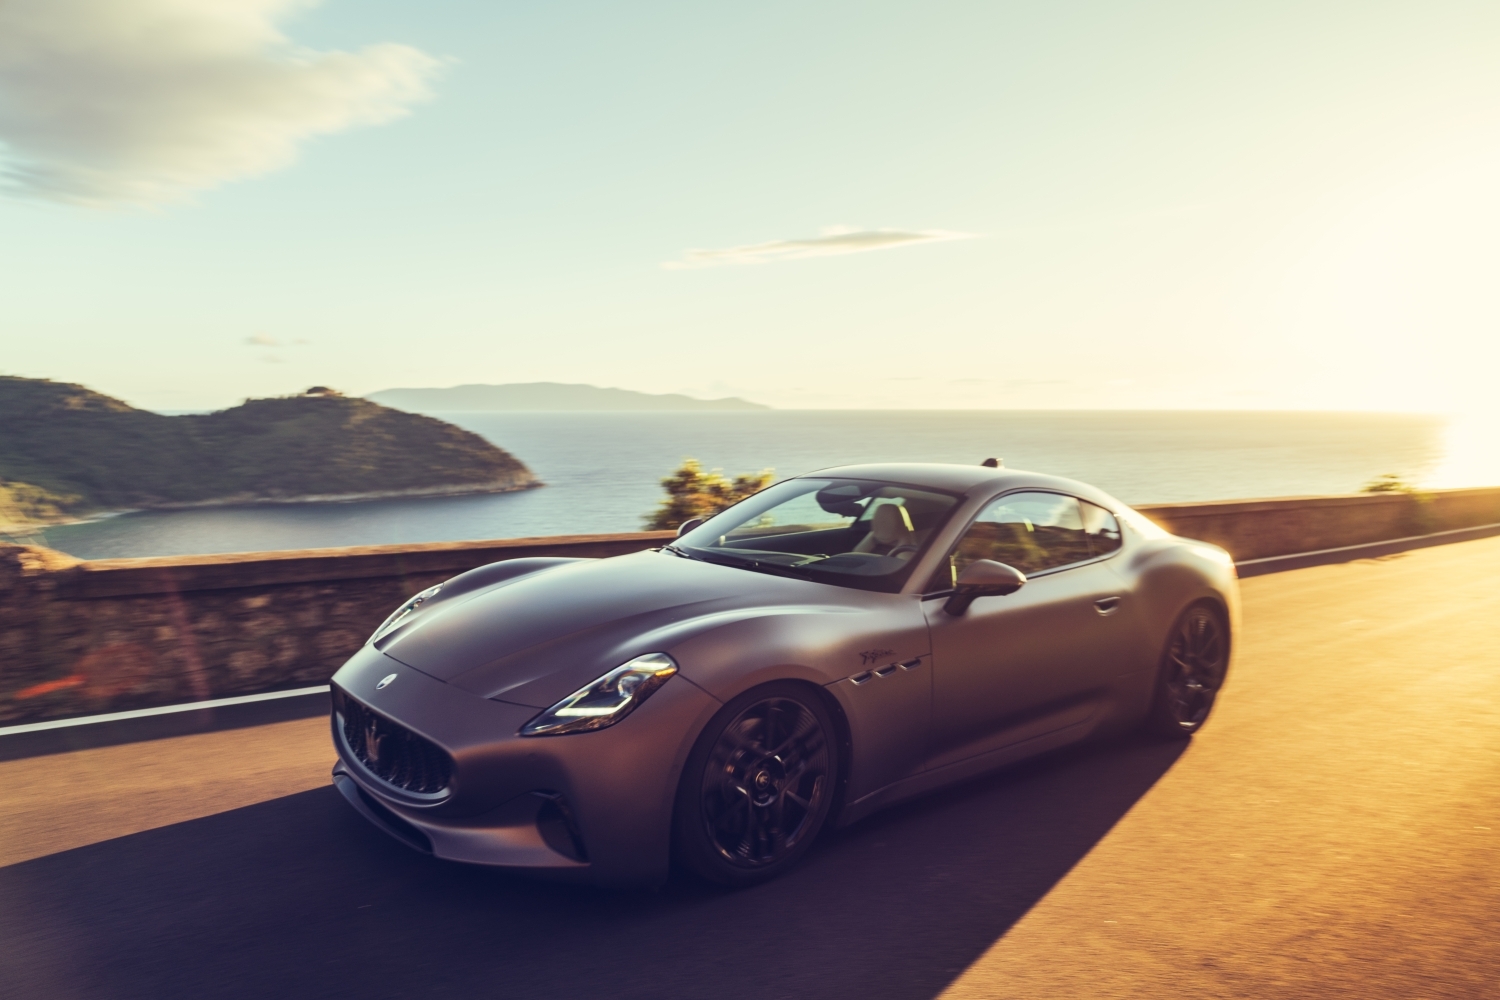 圖2- Maserati 象徵品牌經典的標誌車款 GranTurismo 在純電版本上採用源自 Formula E 賽事的革新技術，將性能表現推升至全新領域.jpg